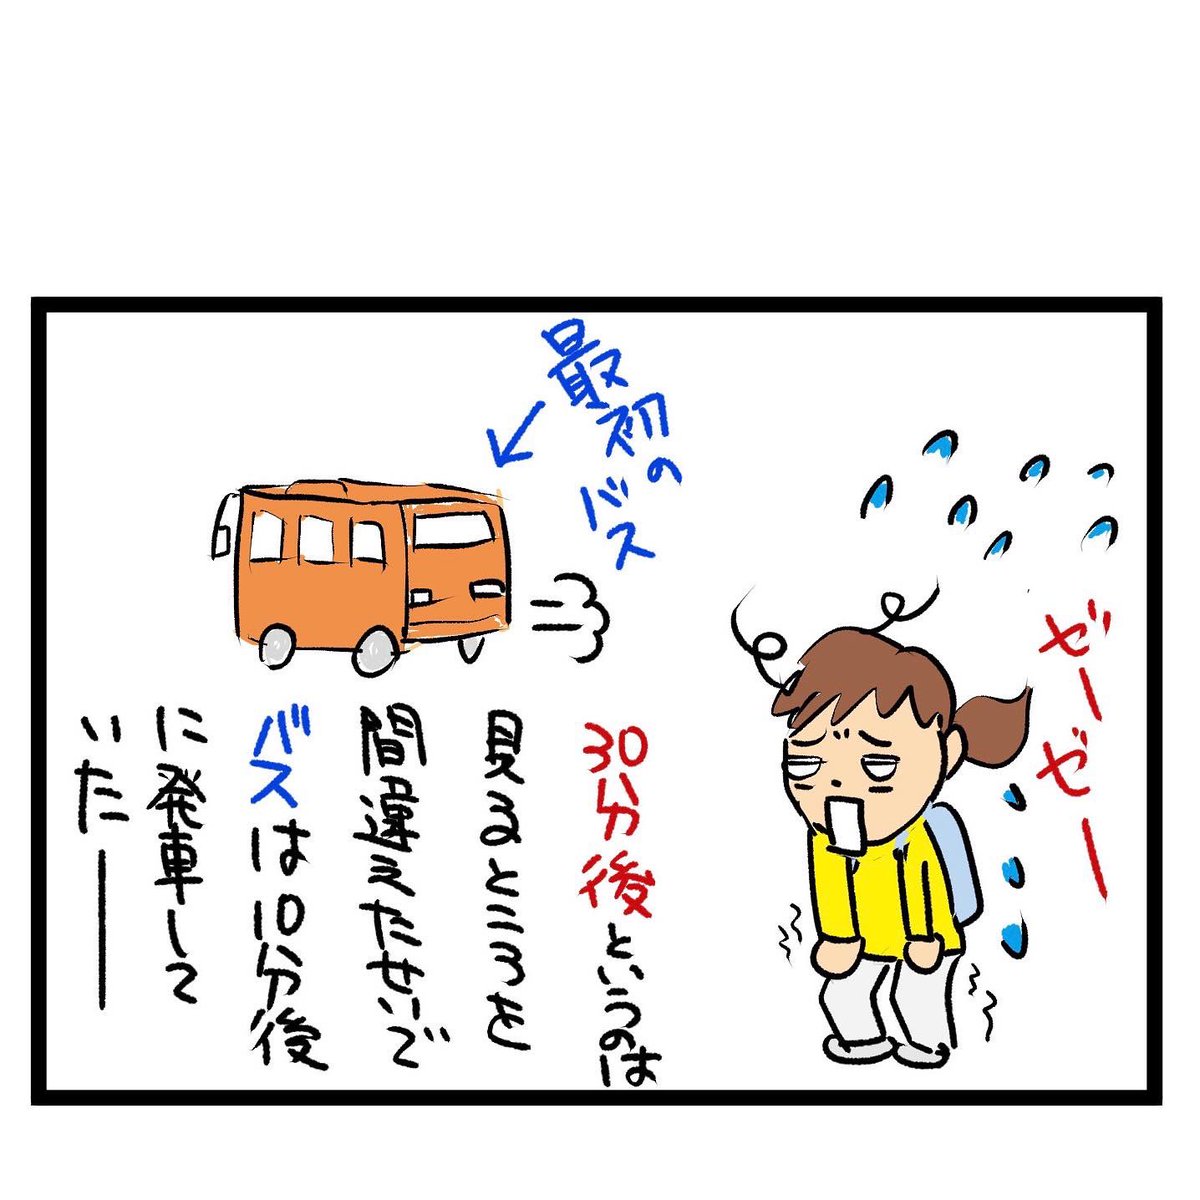 #四コマ漫画
#休日出勤
バスに乗れません 